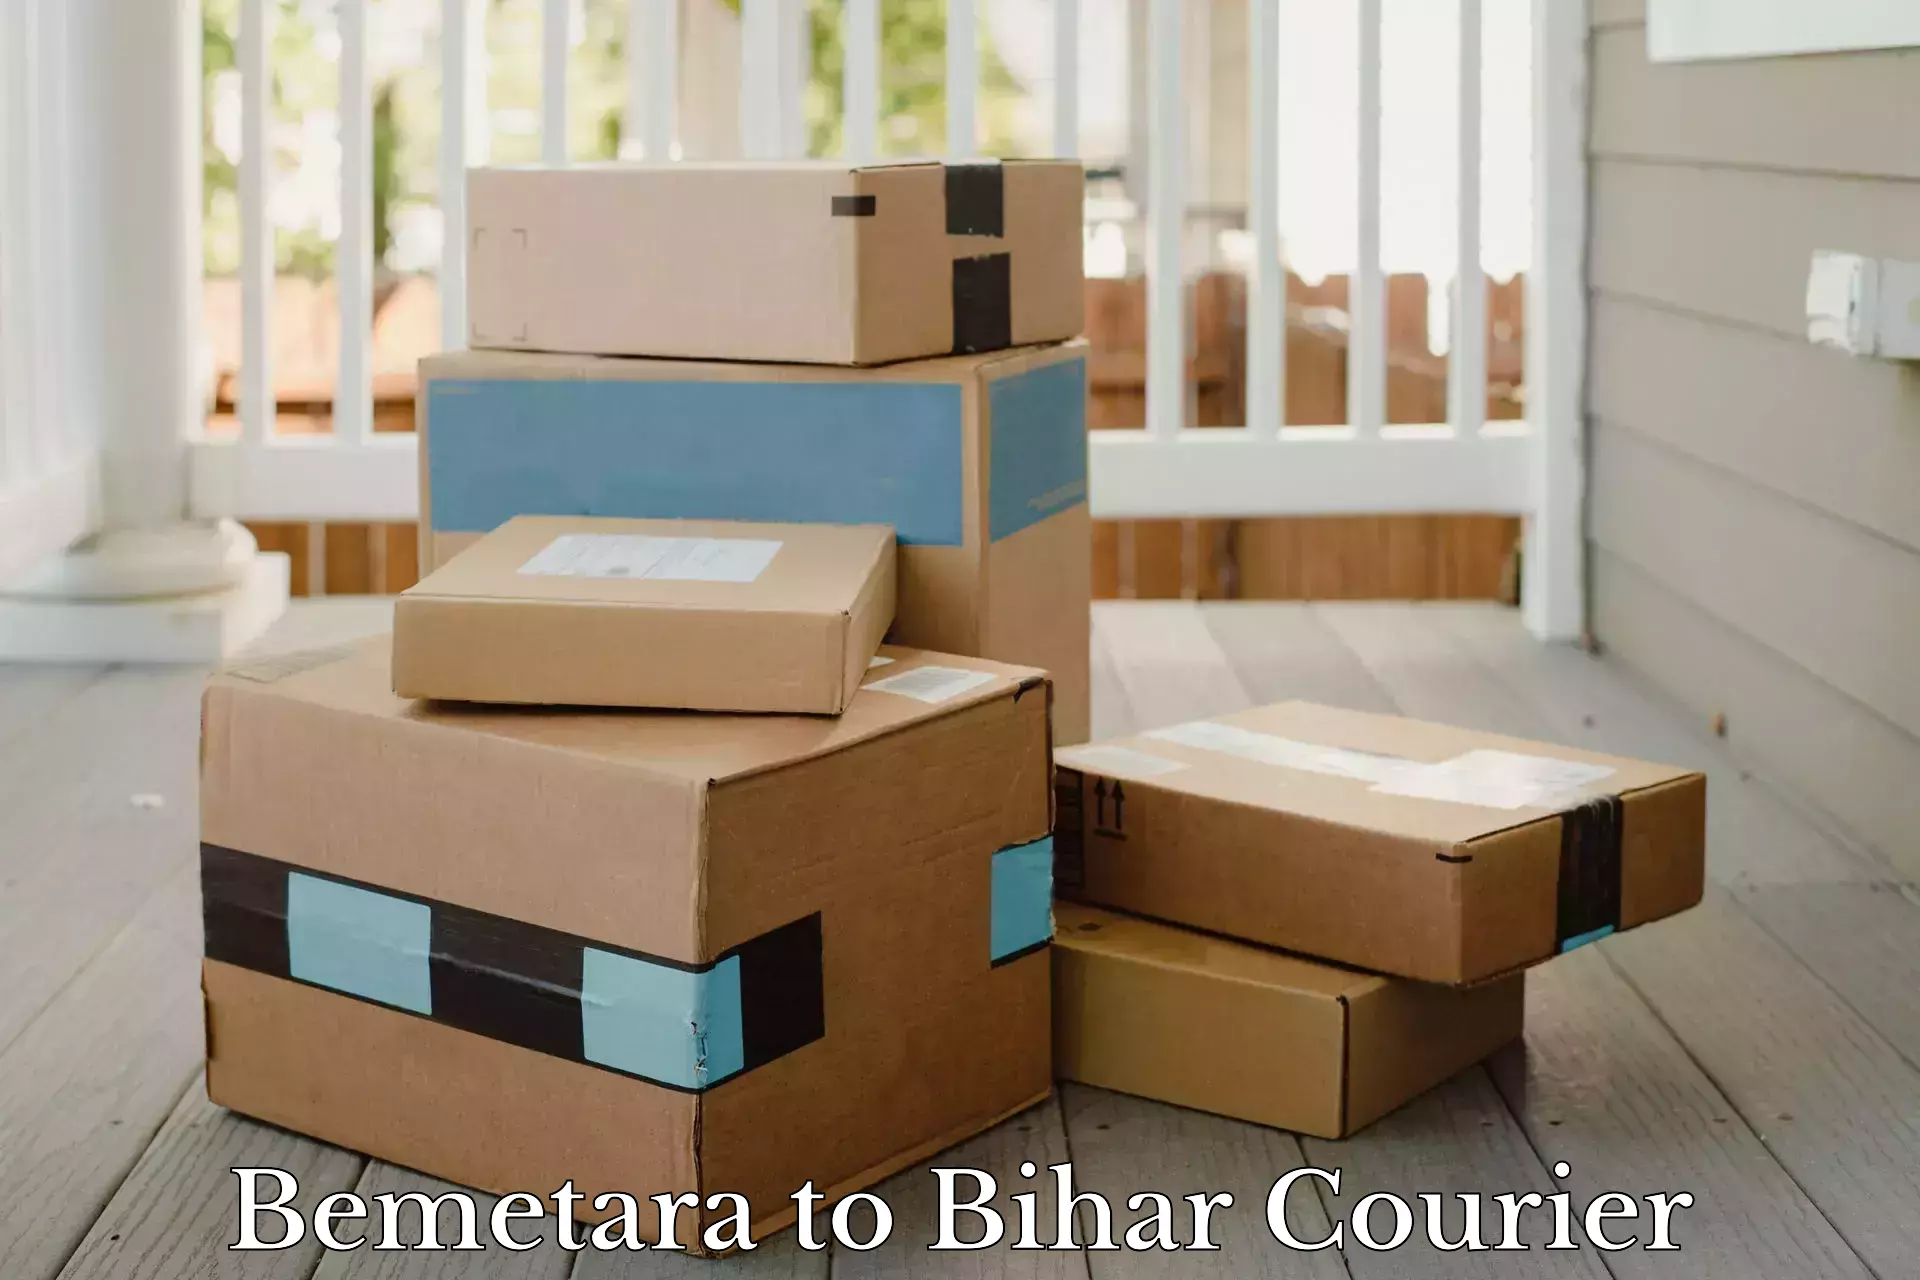 Parcel service for businesses Bemetara to Bihar